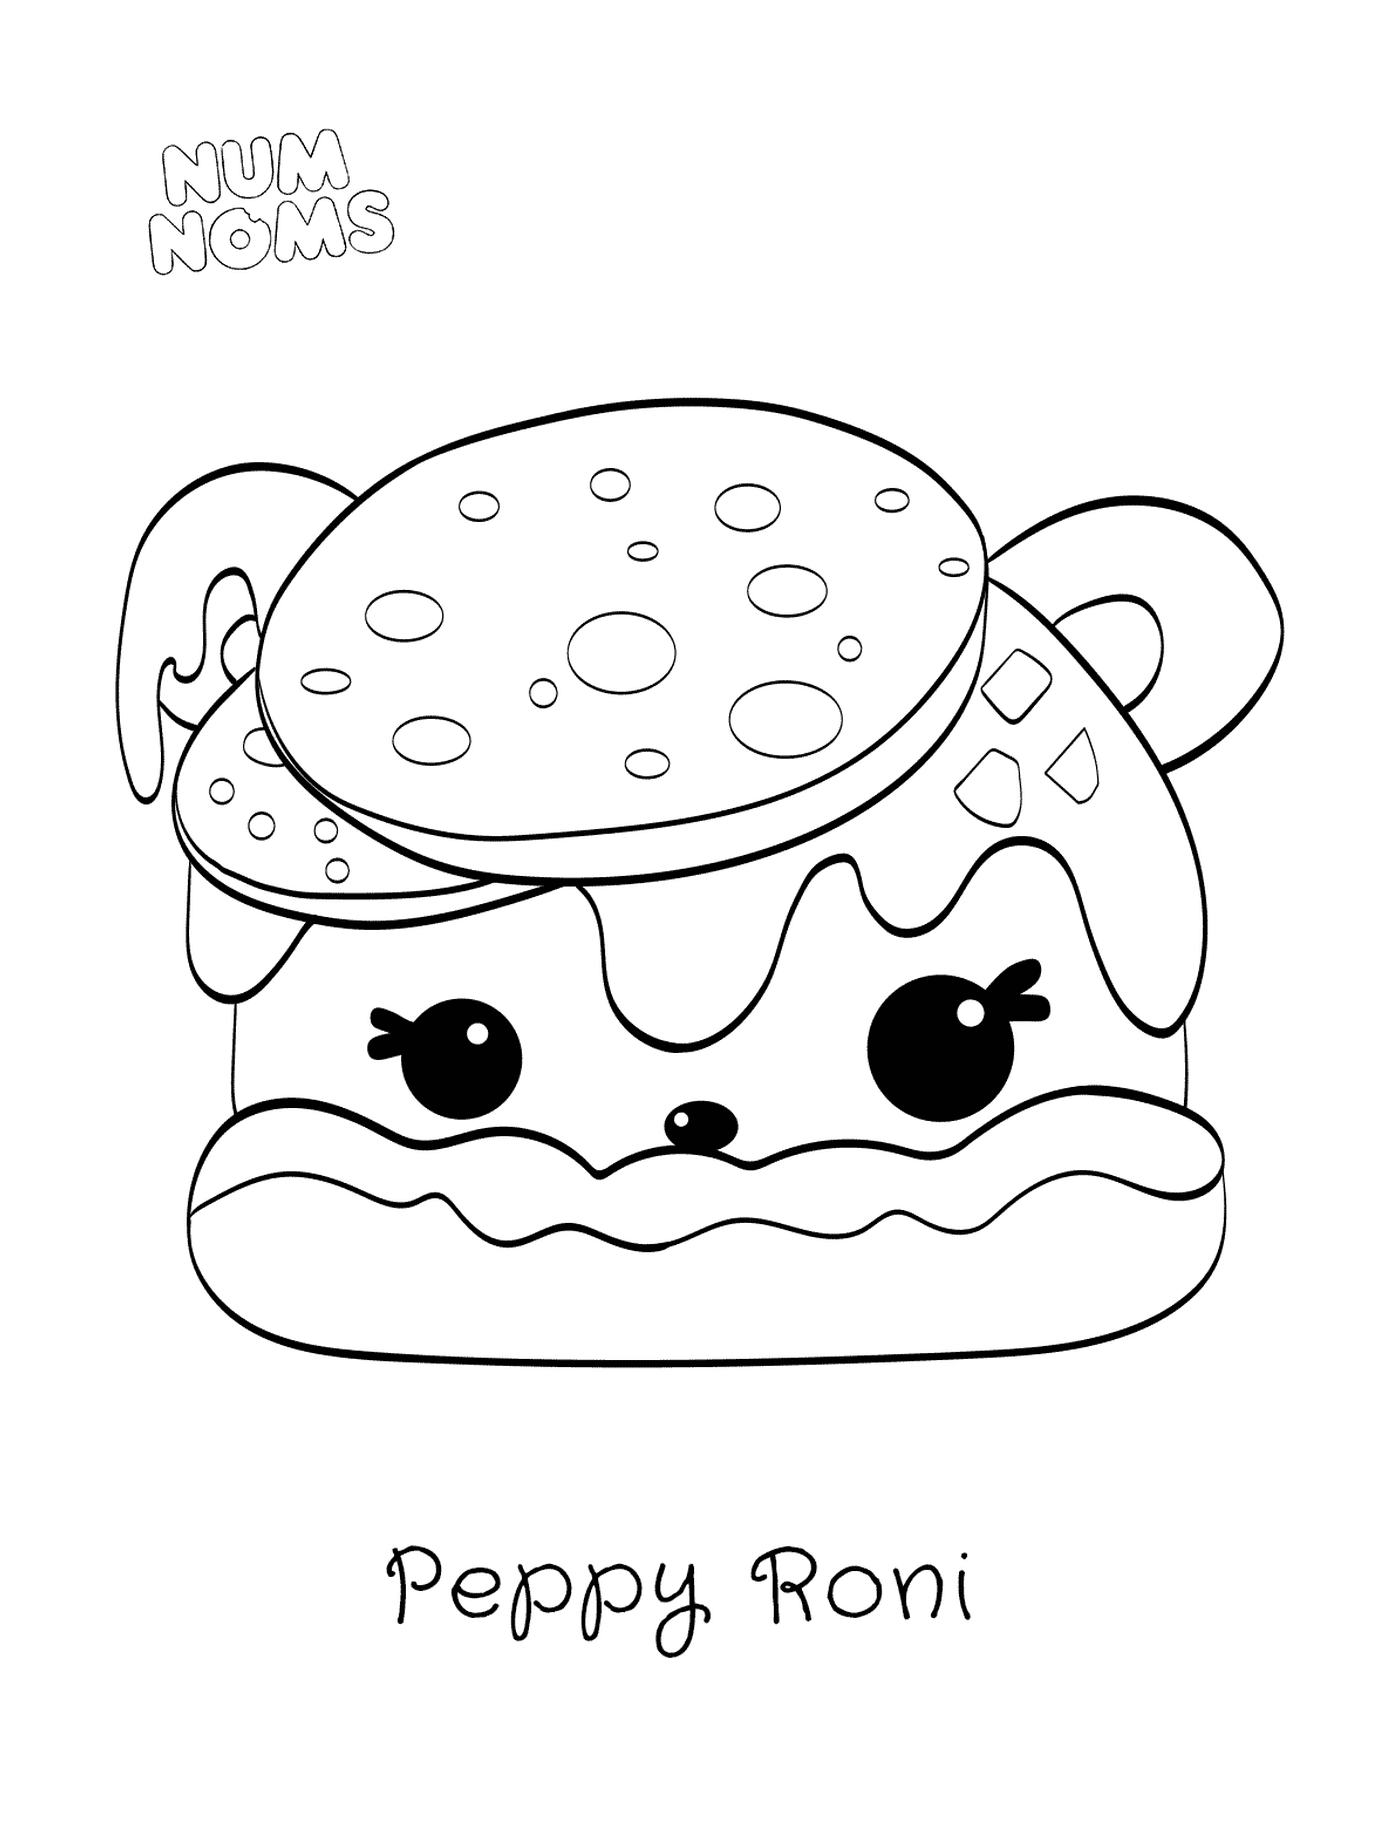   Pizza Peppy Roni de Num Noms 